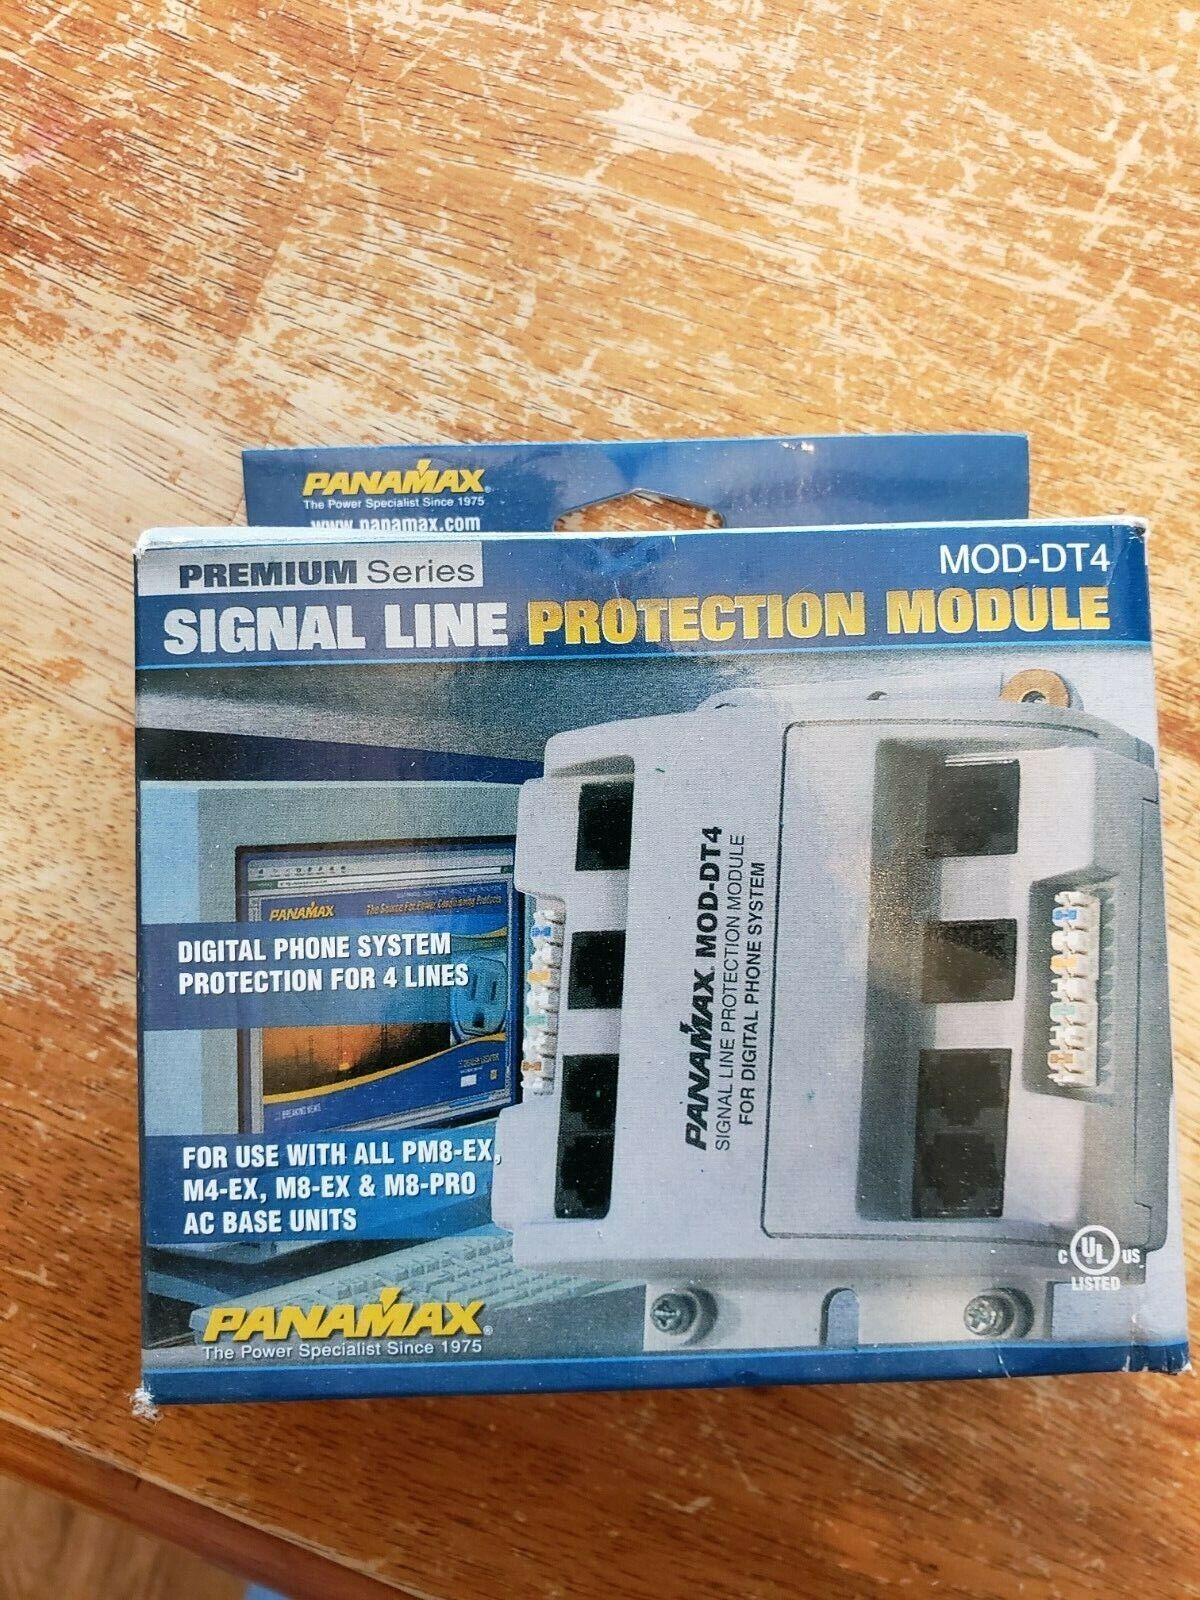 MOD-DT4 Panamax Premium Signal Line Protection Module